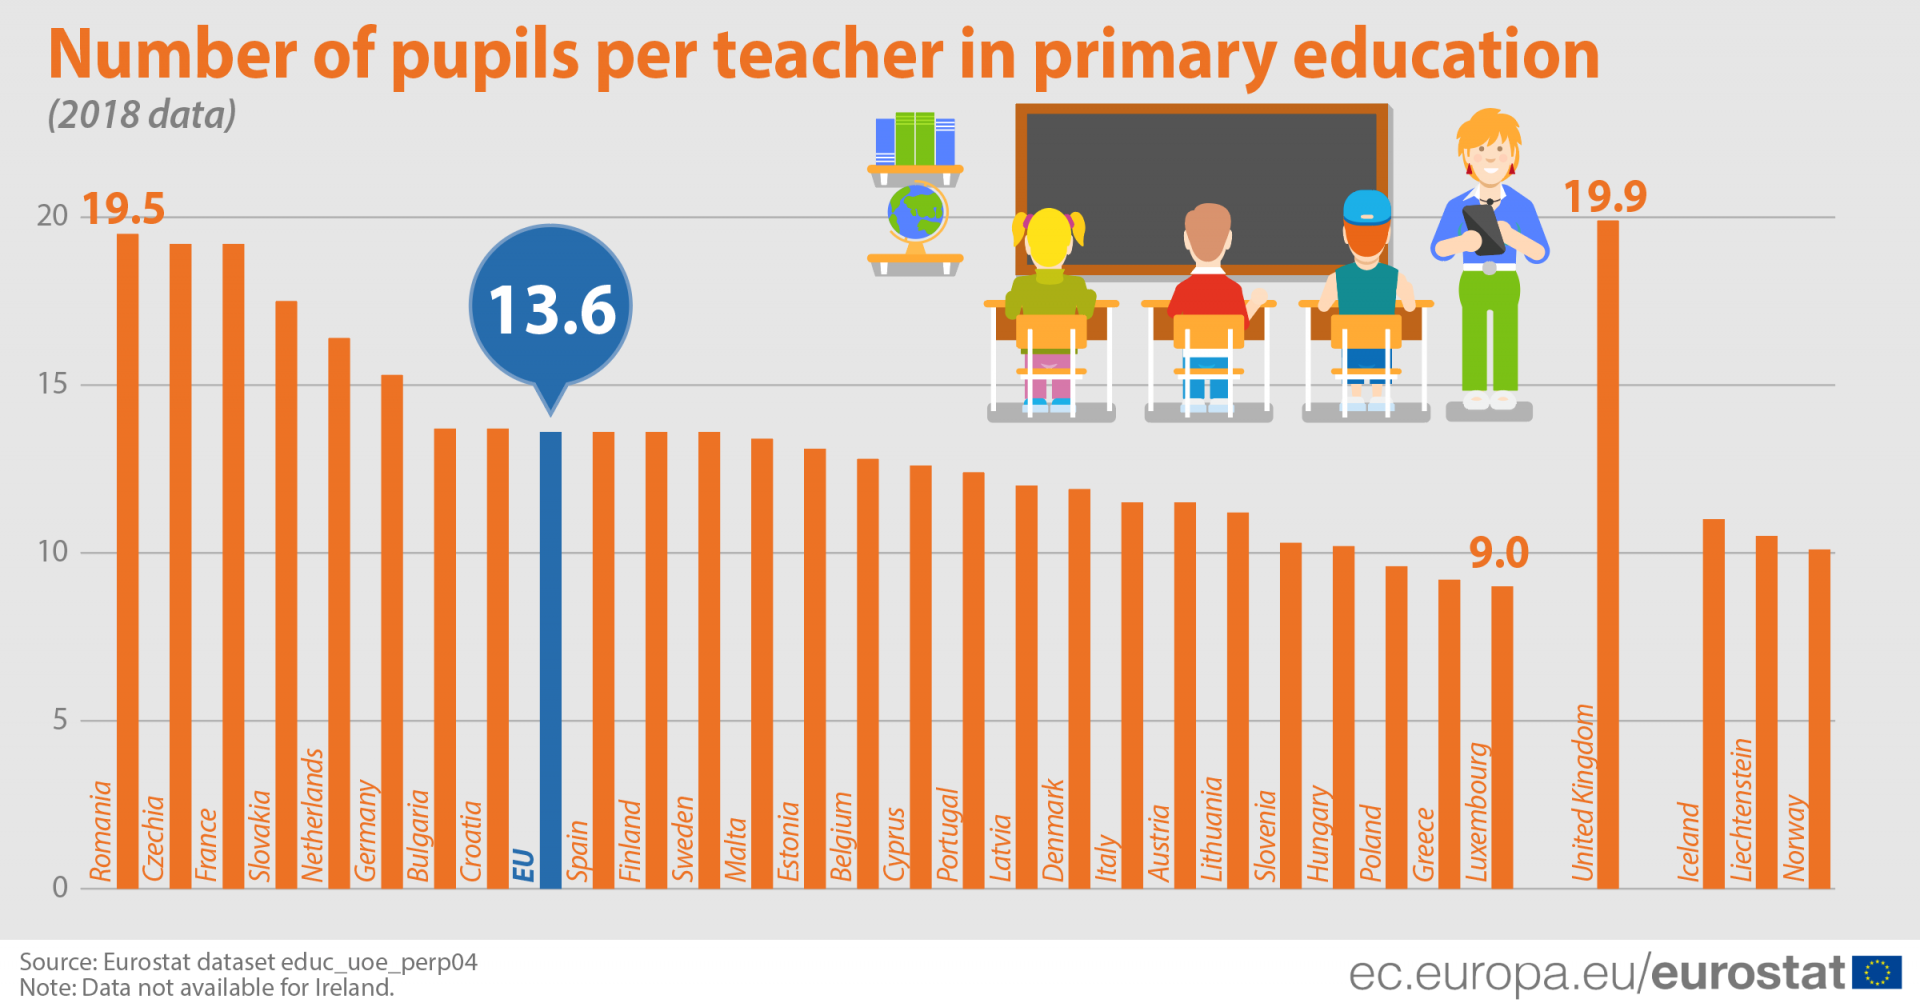 Number of pupils per teacher in primary schools slightly below EU average